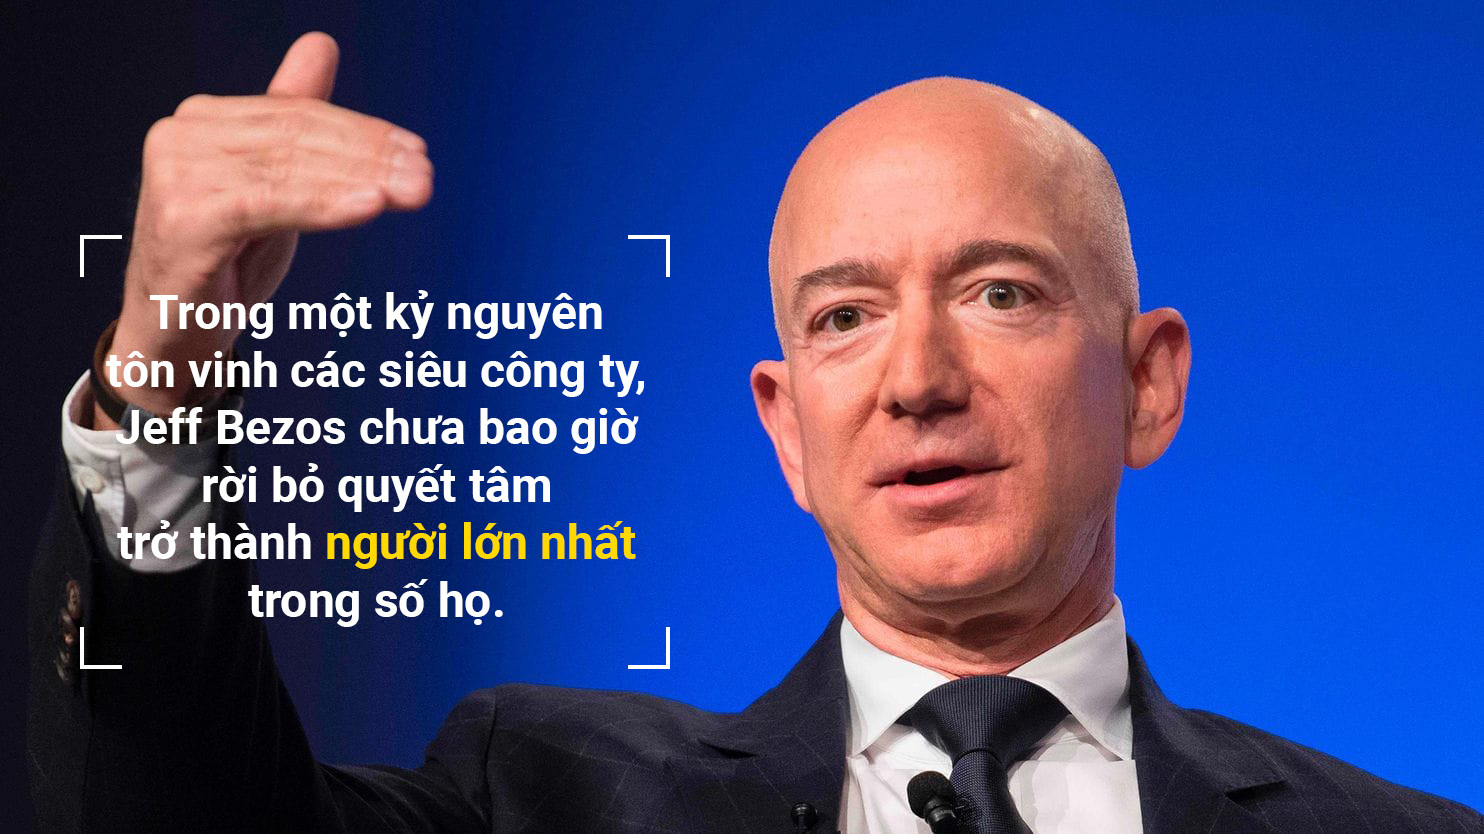 Jeff Bezos - quotes